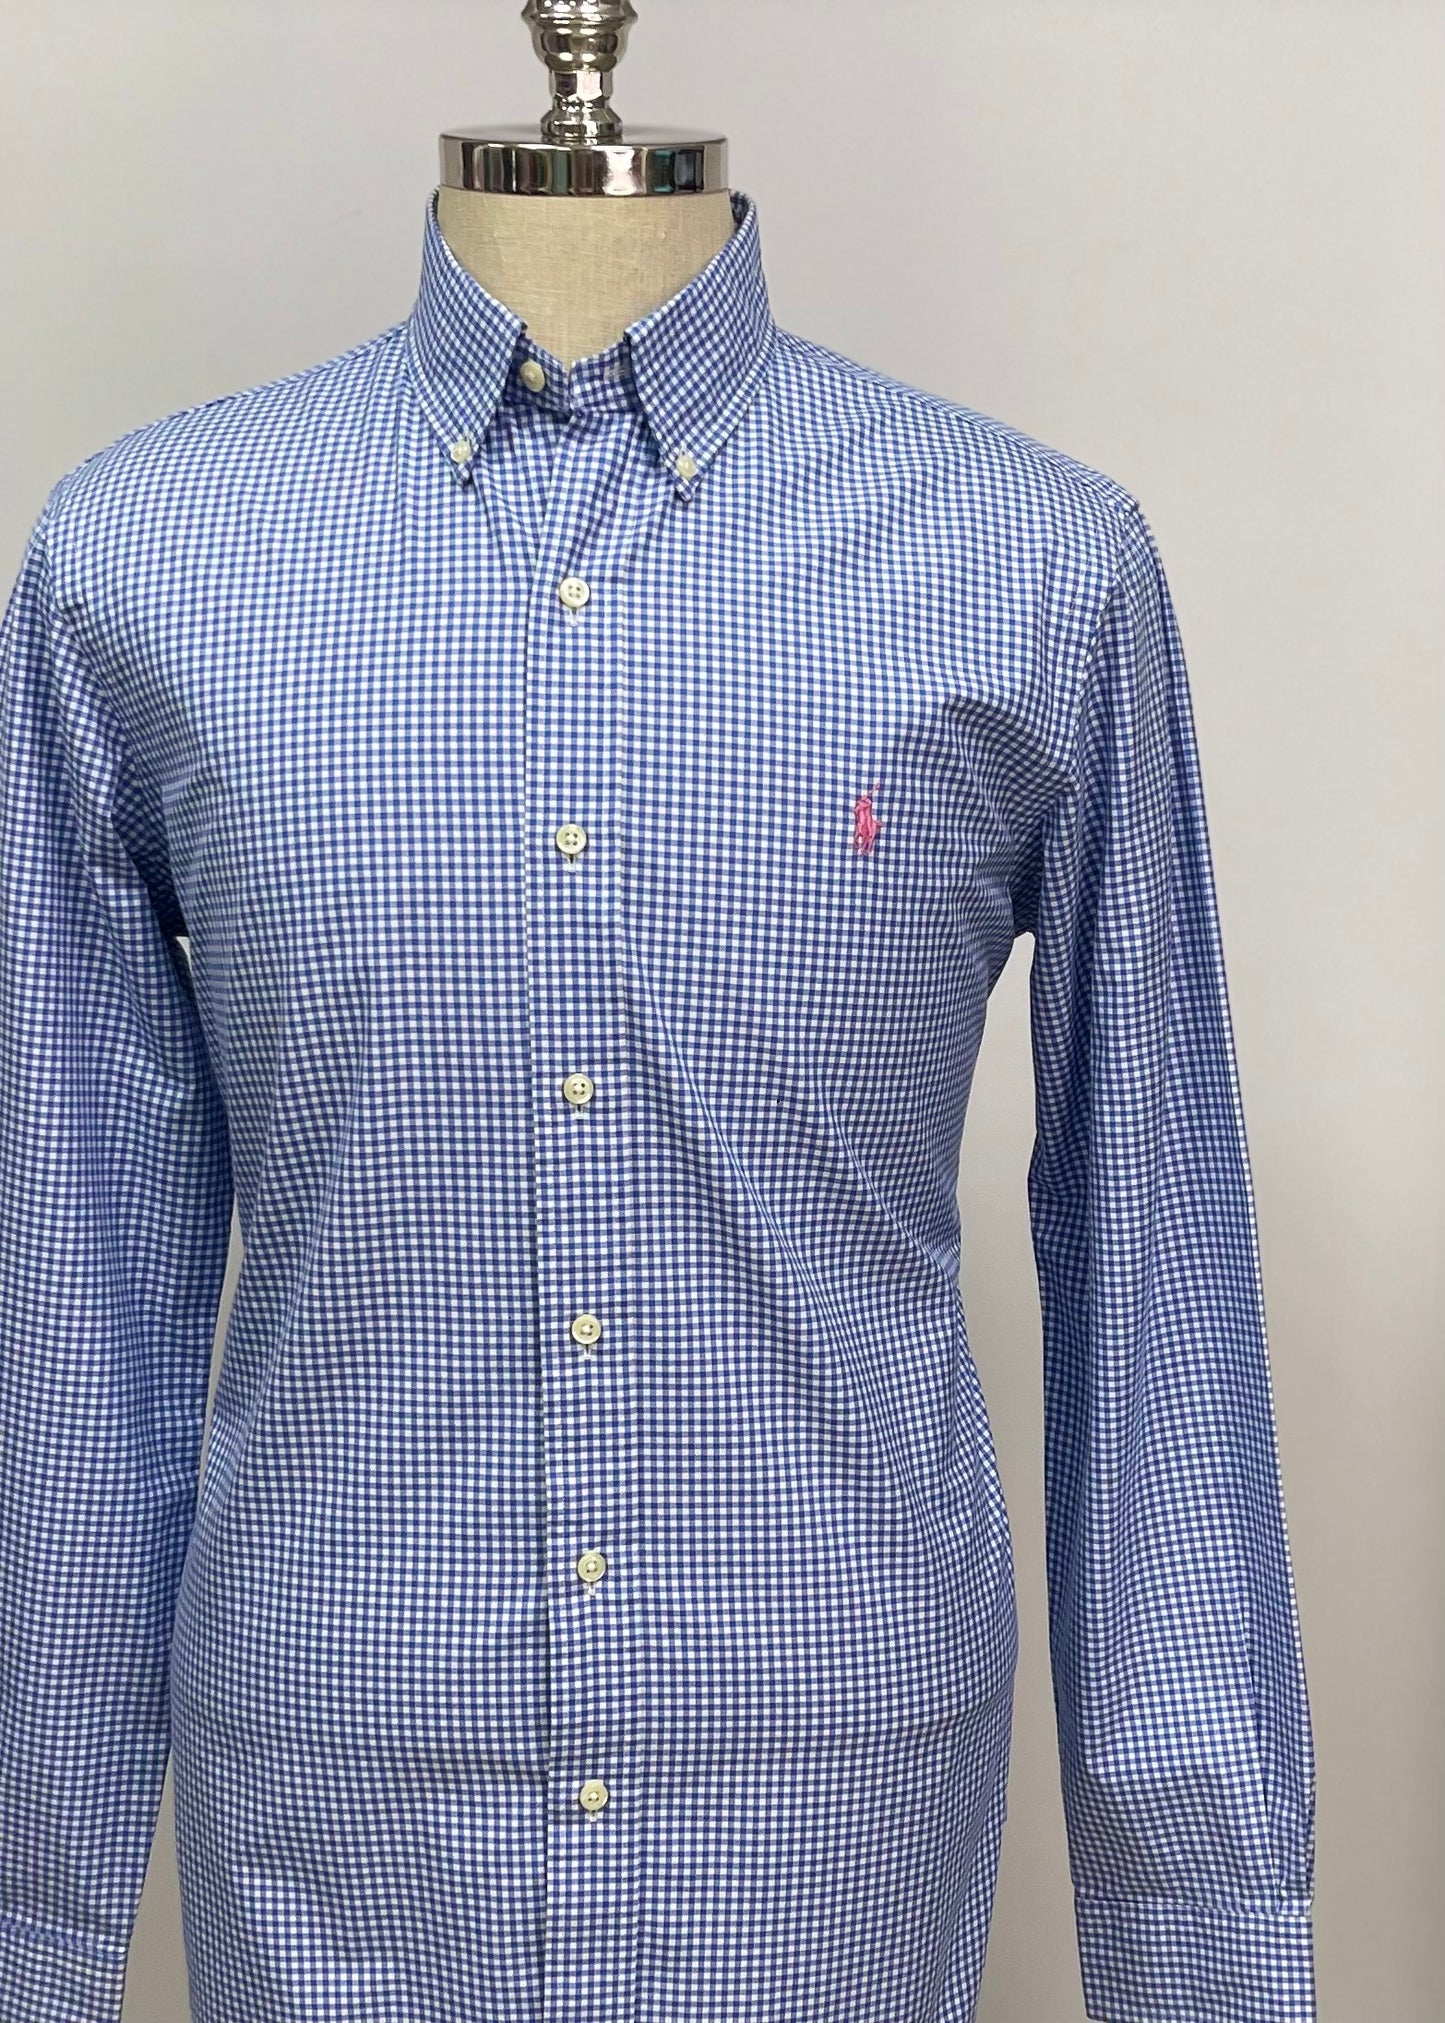 Camisa Polo Ralph Lauren 🏇🏼 con patrón de cuadros gingham celeste y blanco Talla M Entalle Regular